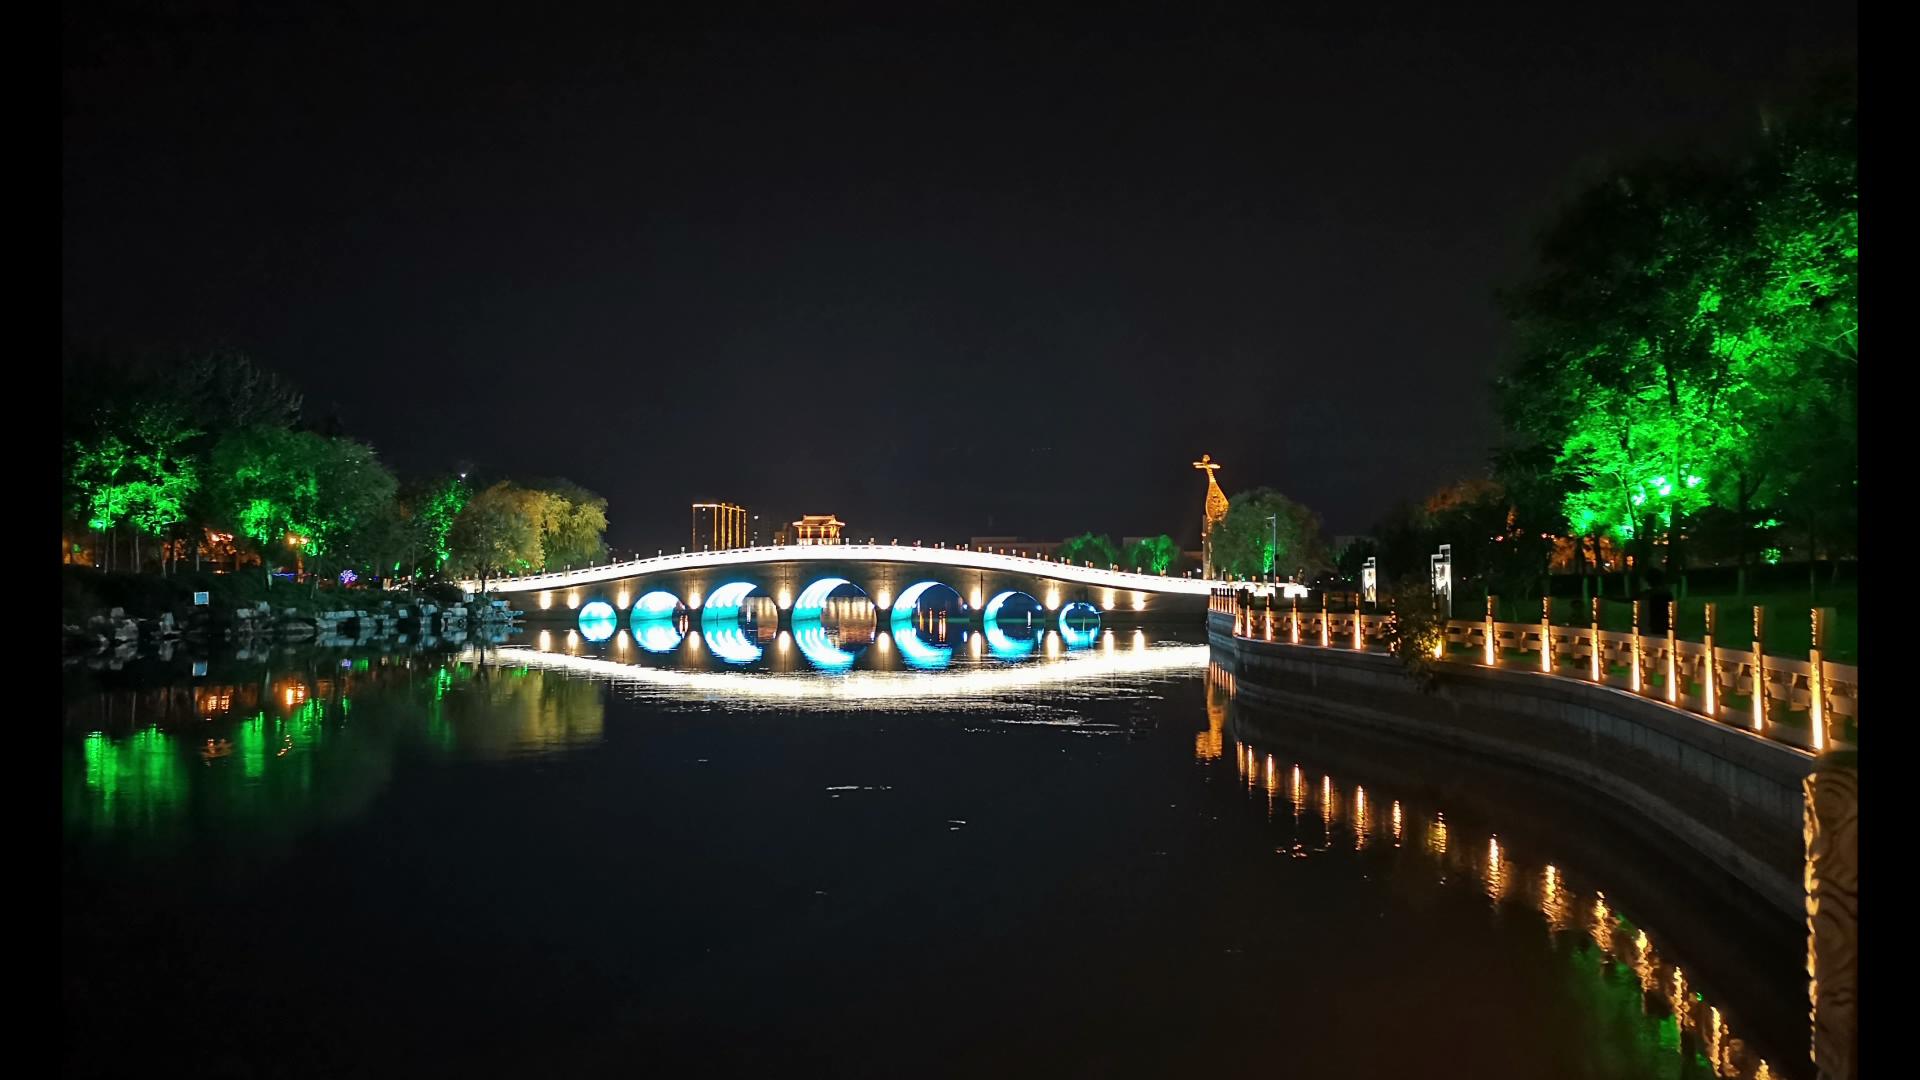 原平市夜景图片